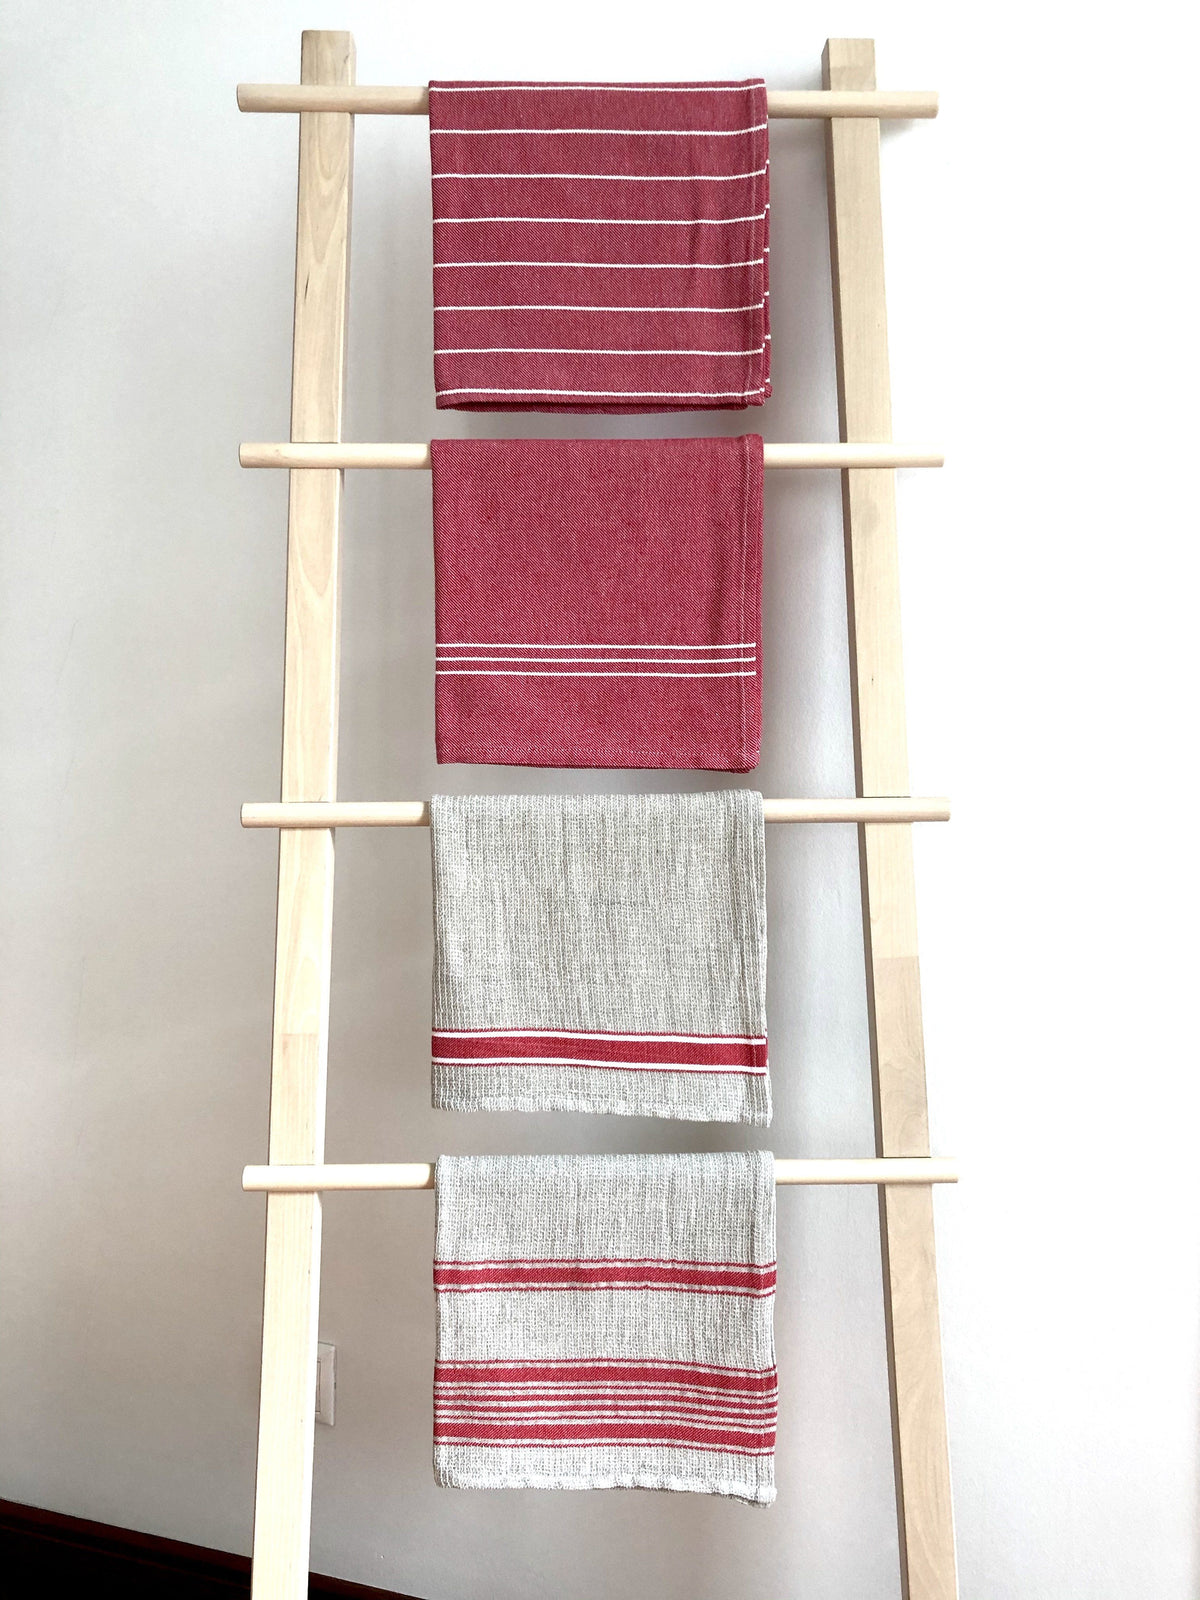 Rustic Savona Linen Kitchen Towel